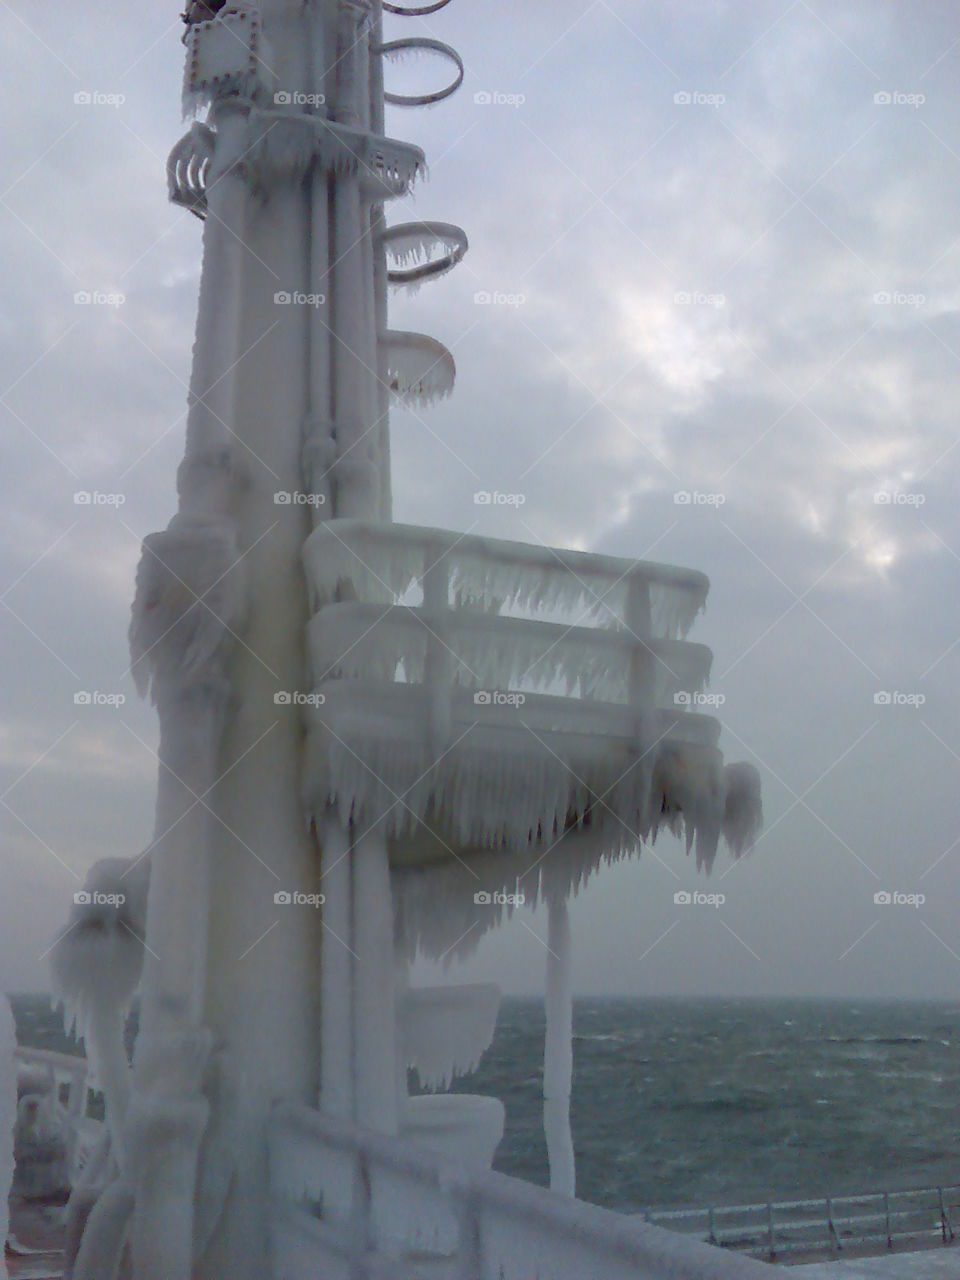 Ice on ship(Norway @ -18°c) Freezing 😱
Forward Mast.